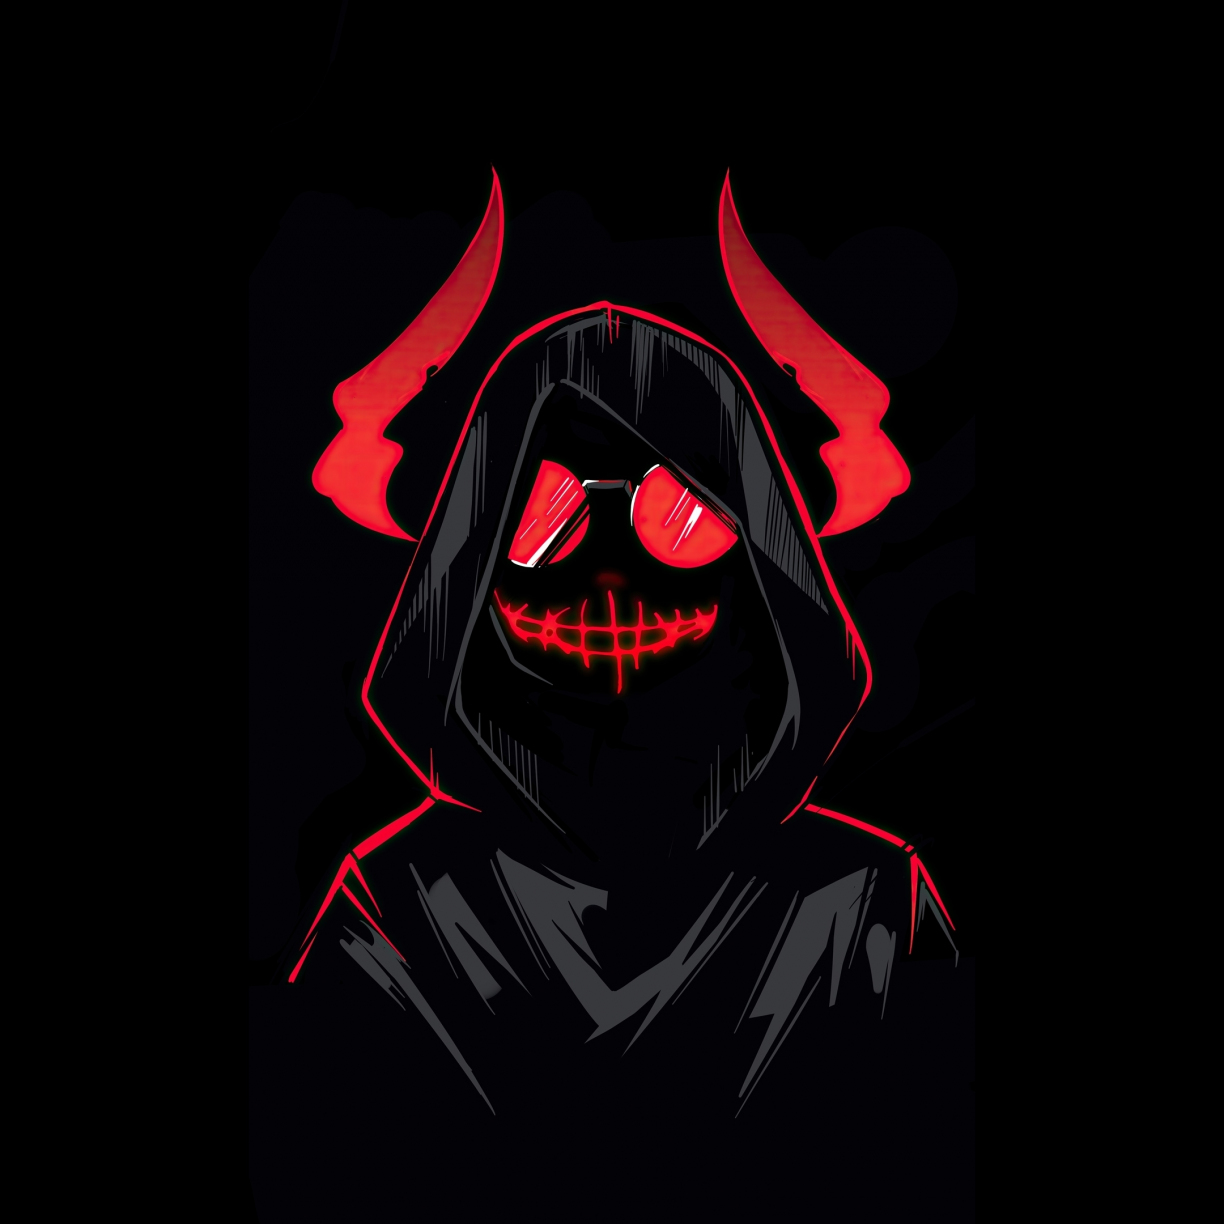 Wallpaper devil boy, dark & minimal art desktop wallpaper, hd image ...